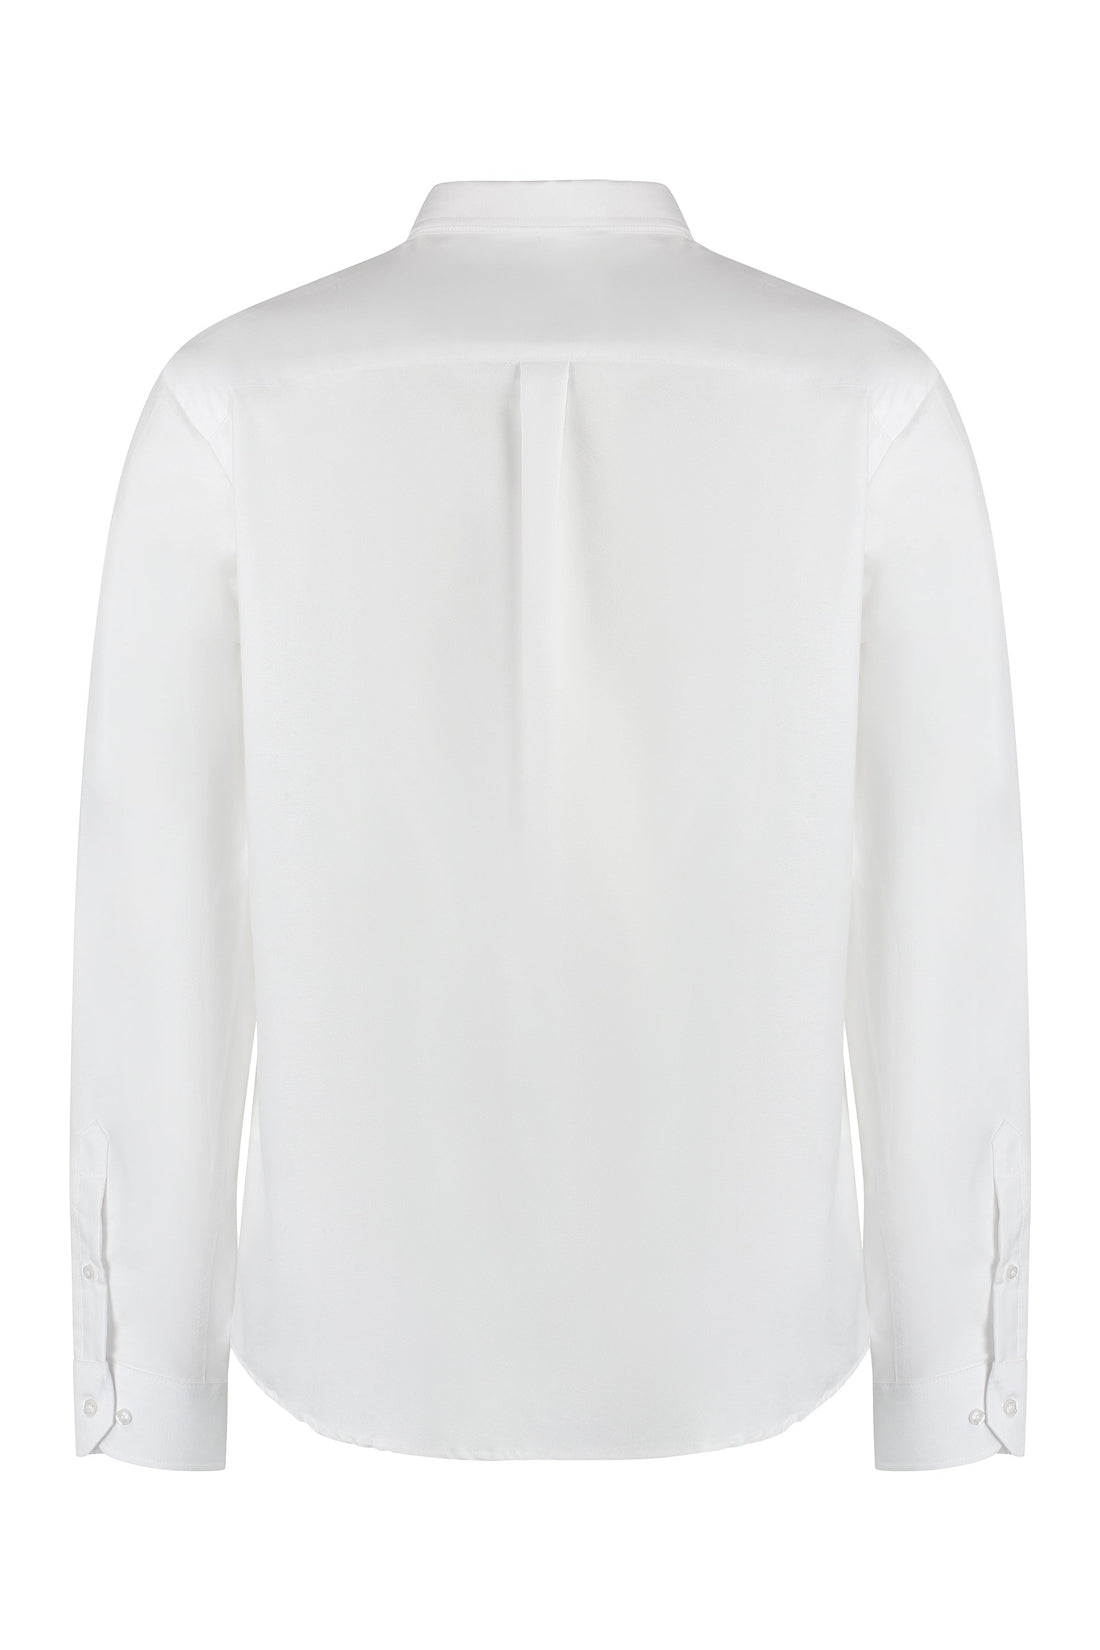 Les Deux-OUTLET-SALE-Christoph cotton shirt-ARCHIVIST